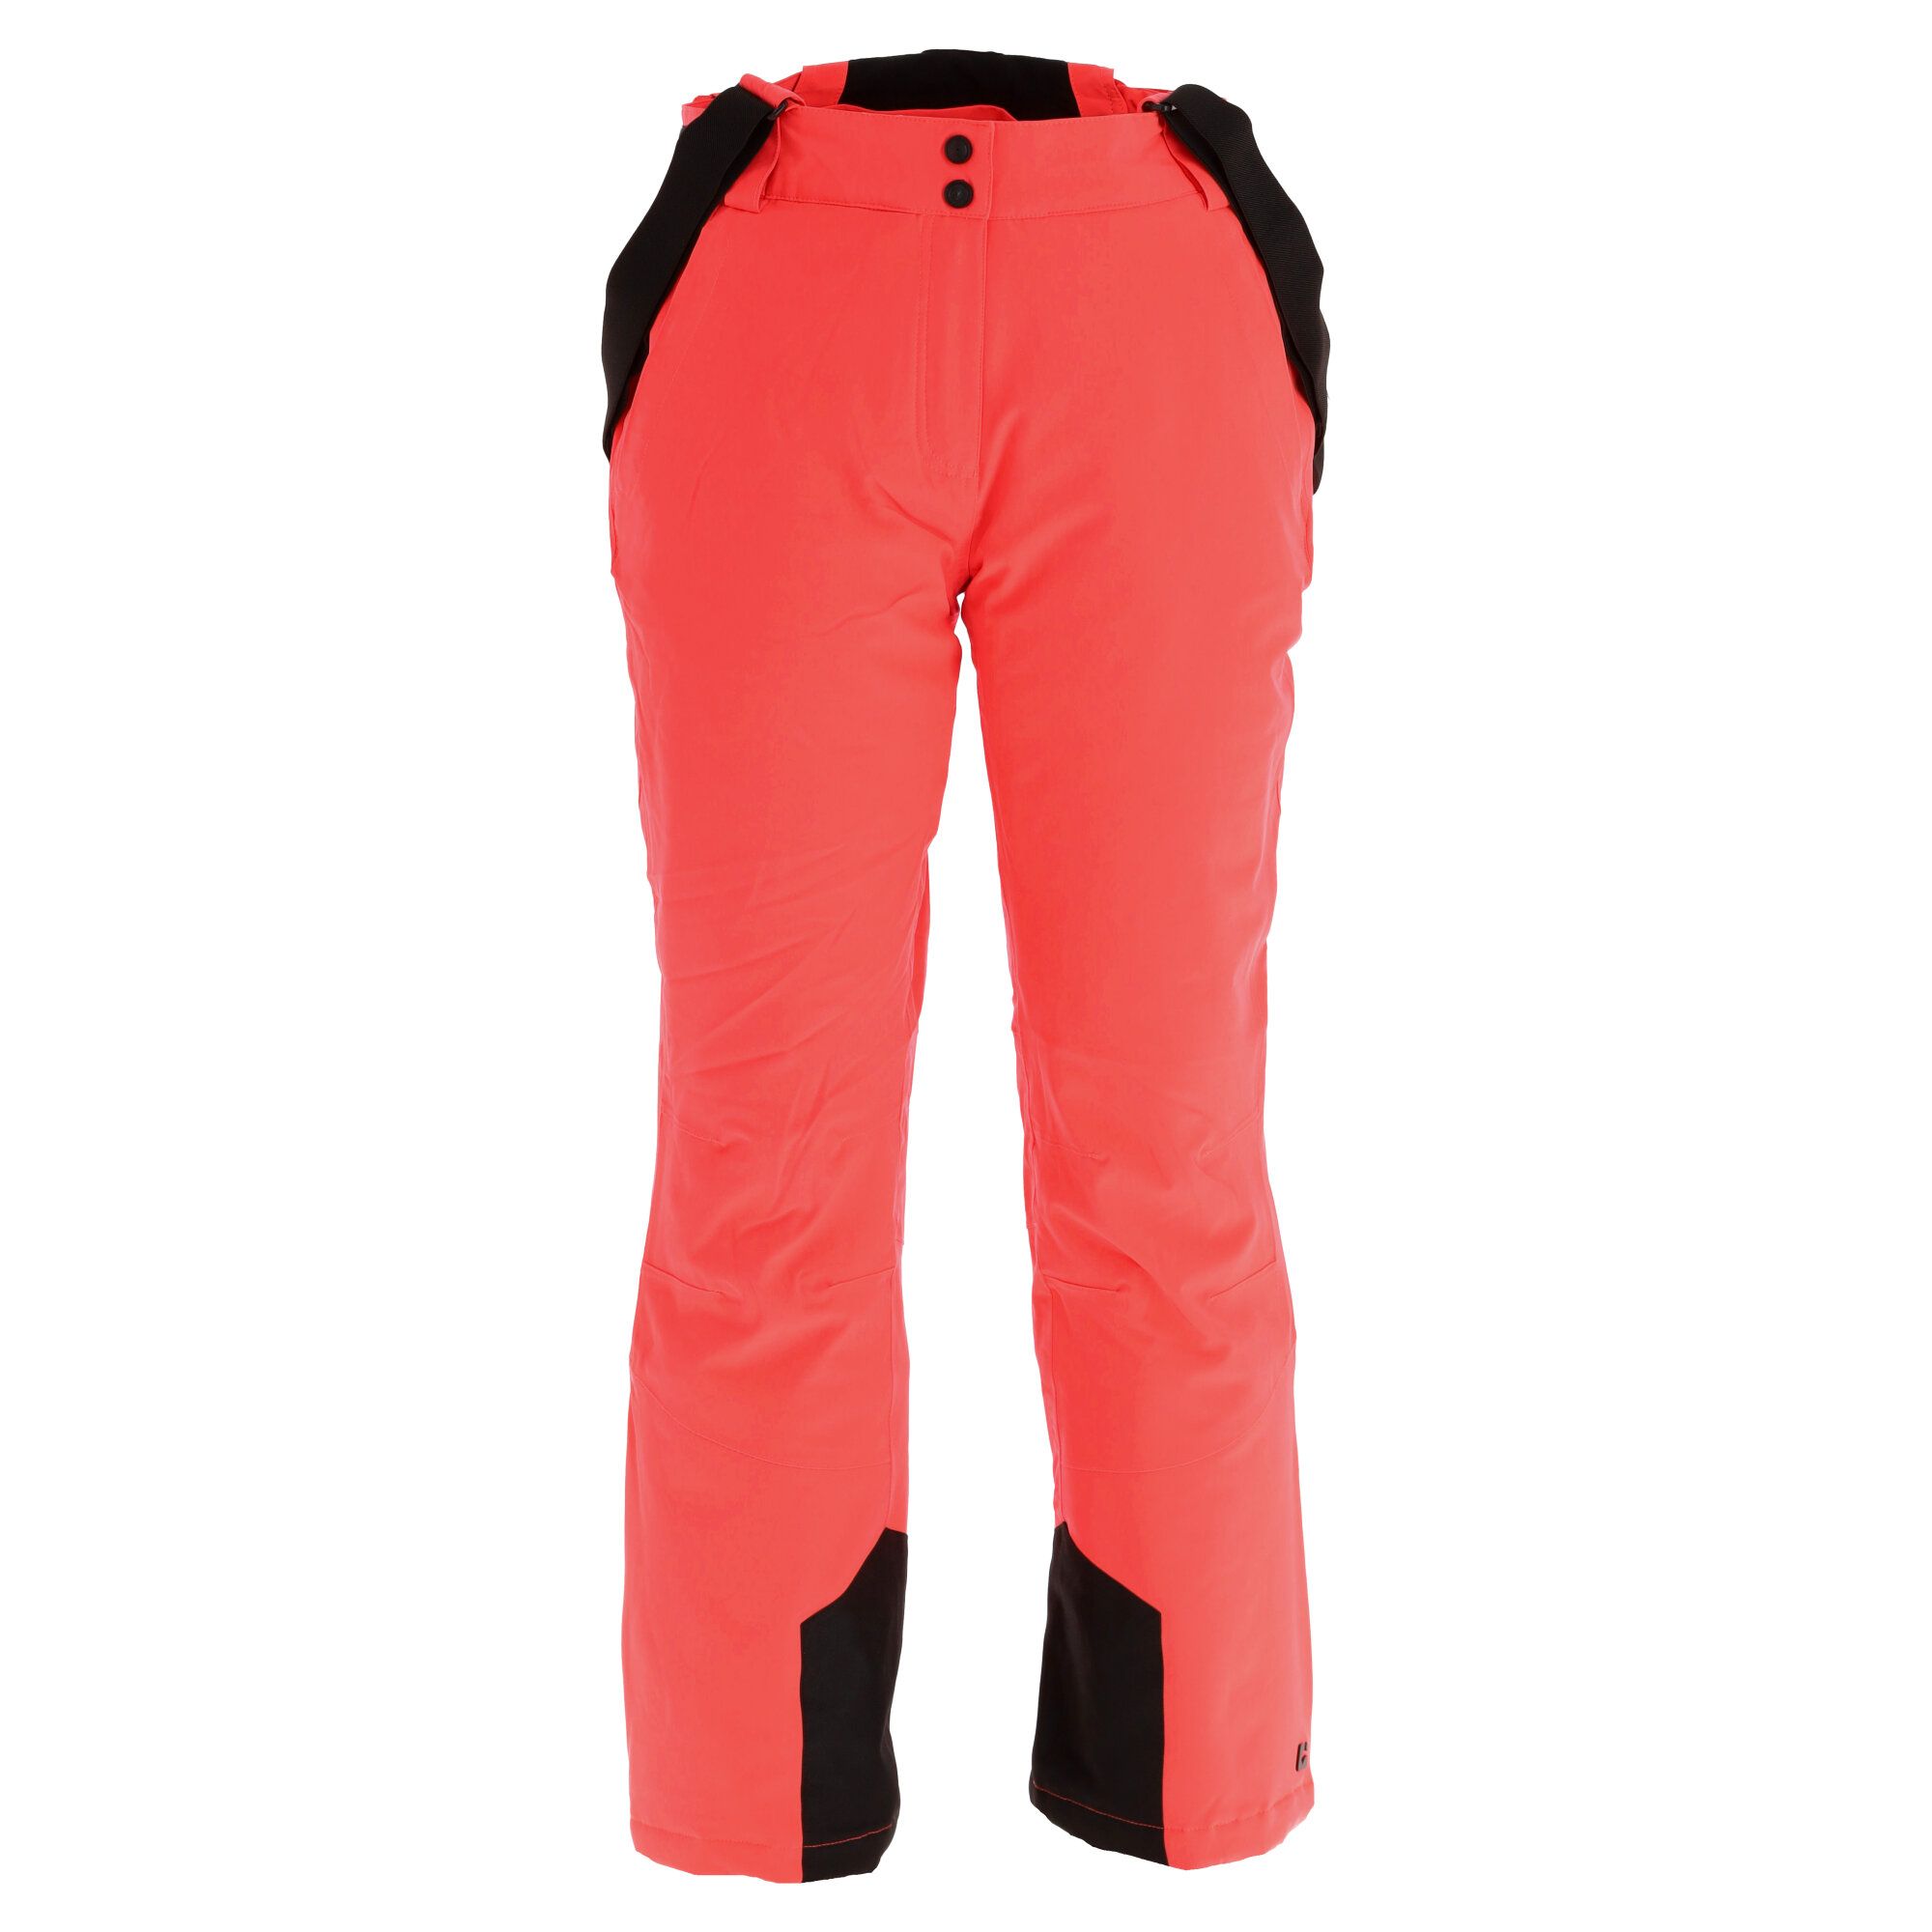 Pantaloni ski barbati Killtec Function, rosu, marimea XL